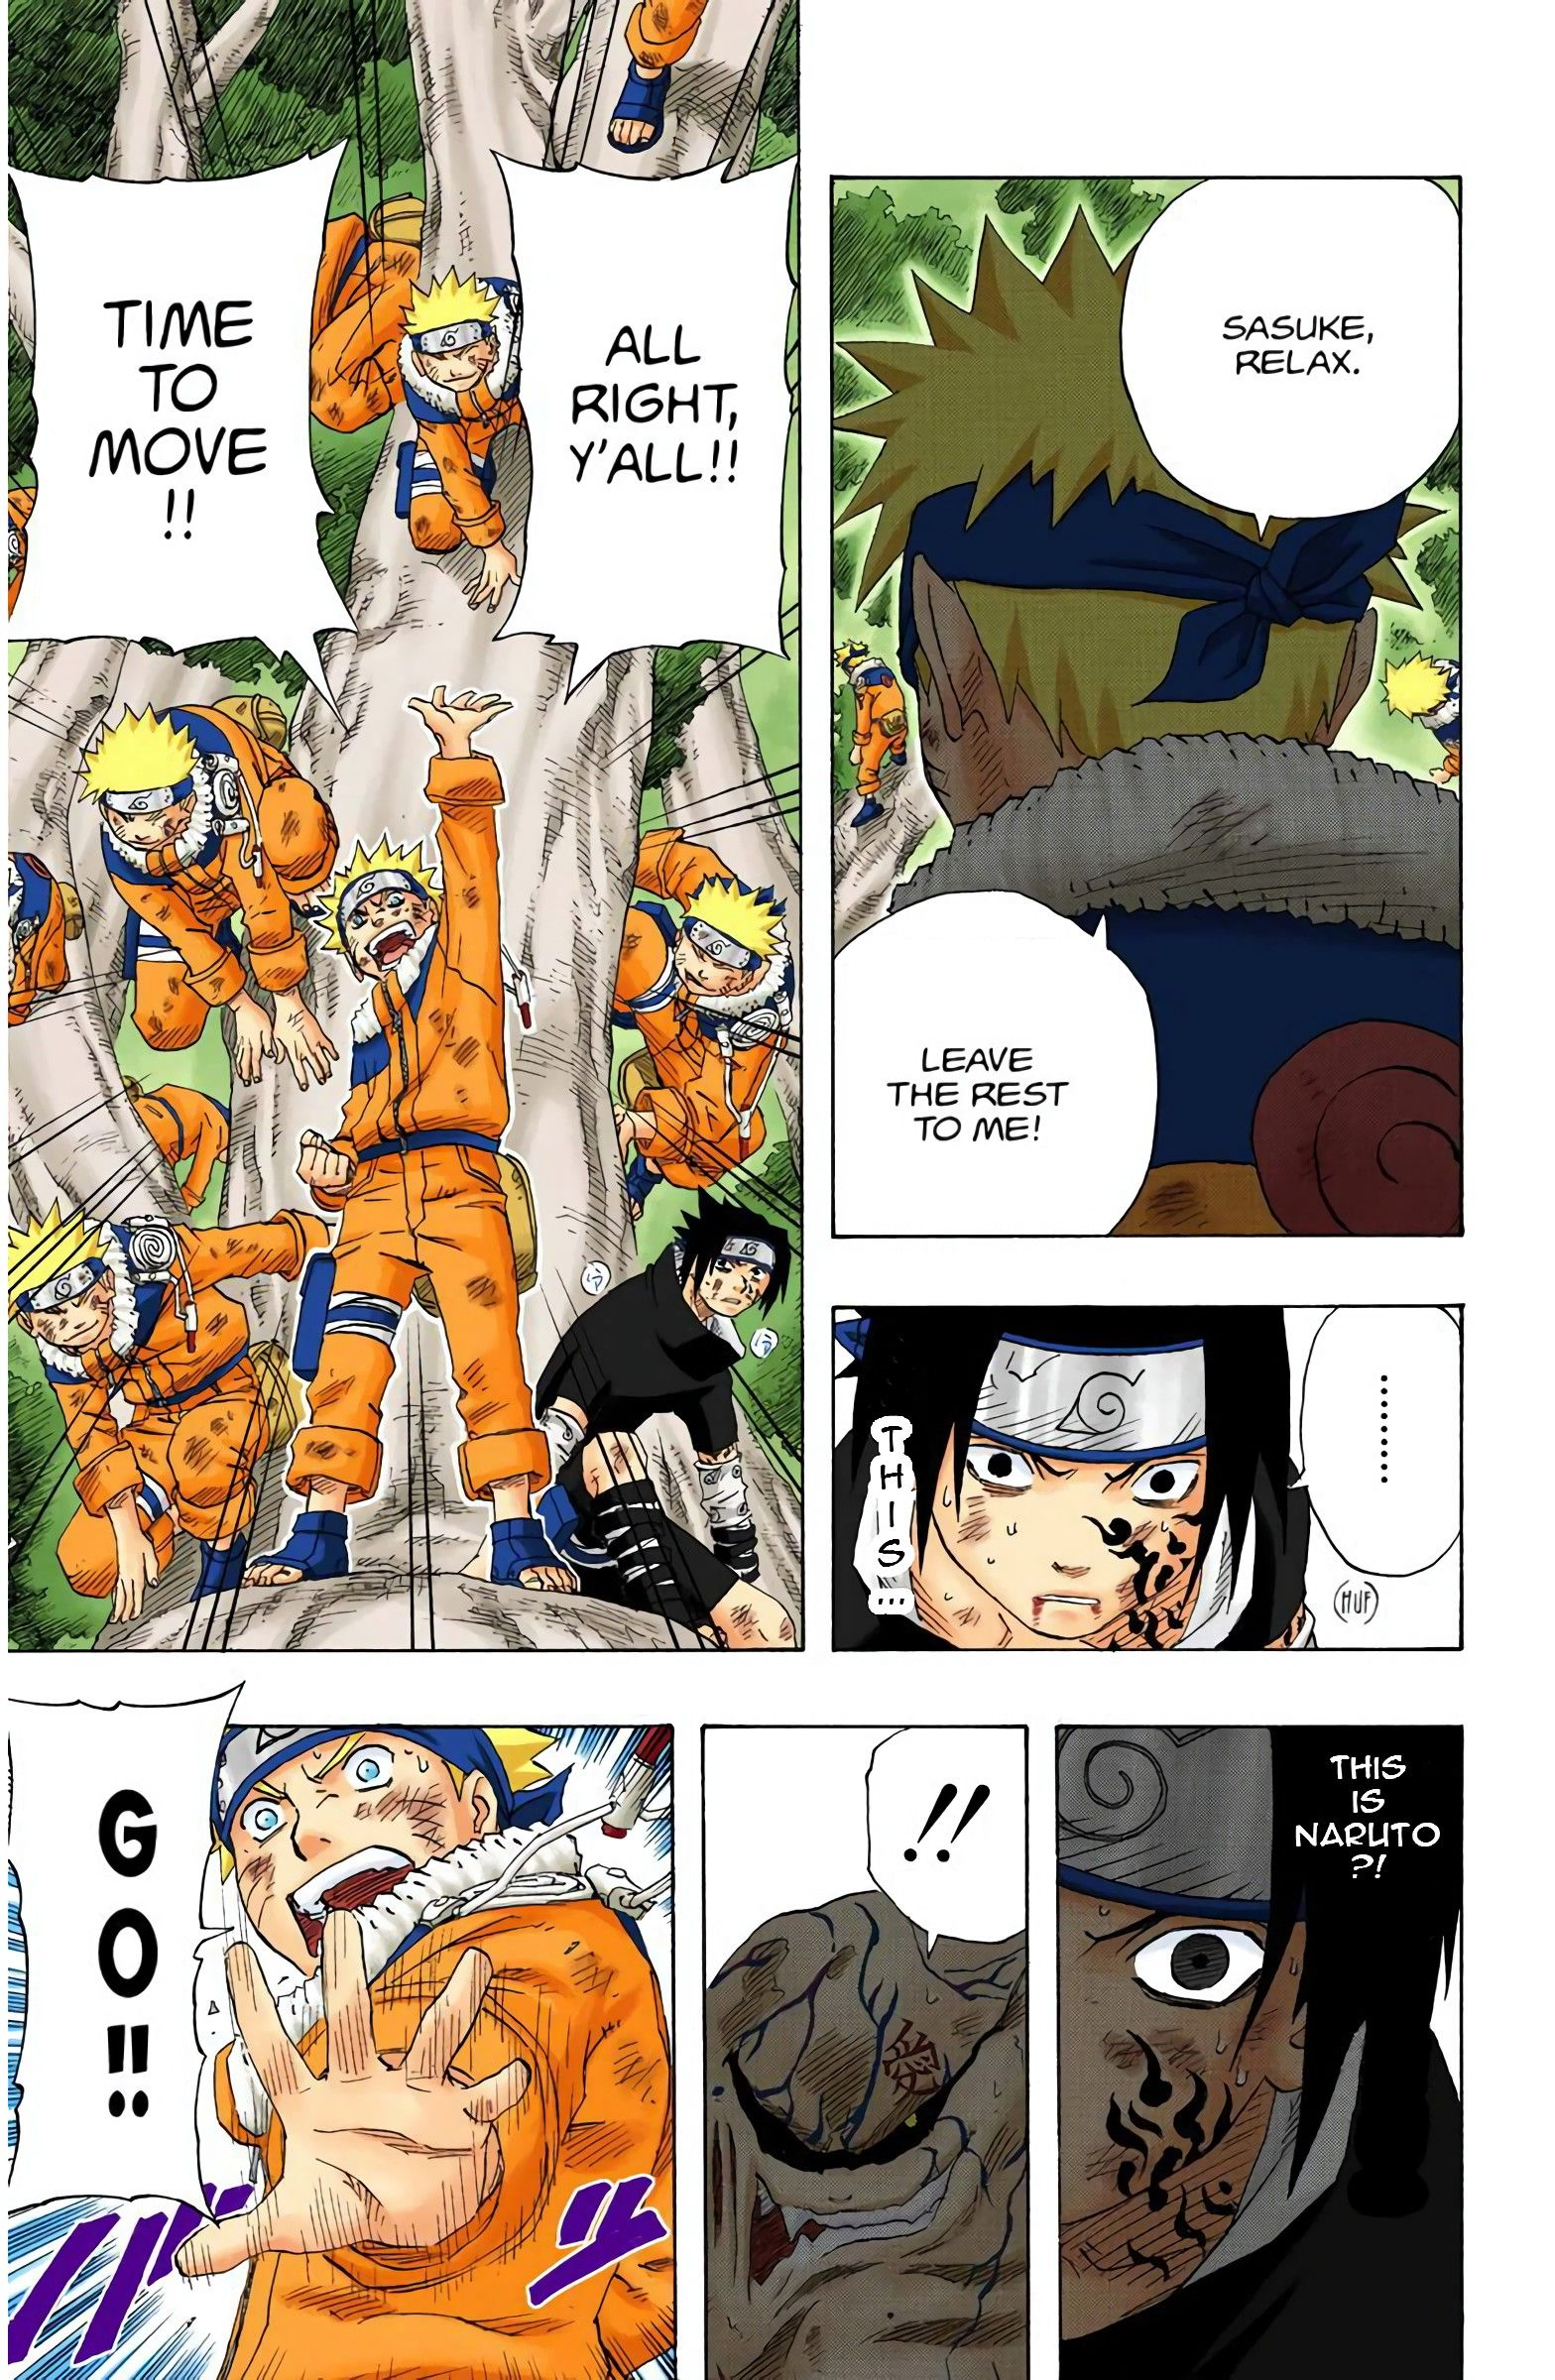 Naruto tells Sasuke that he will take care of Gaara.